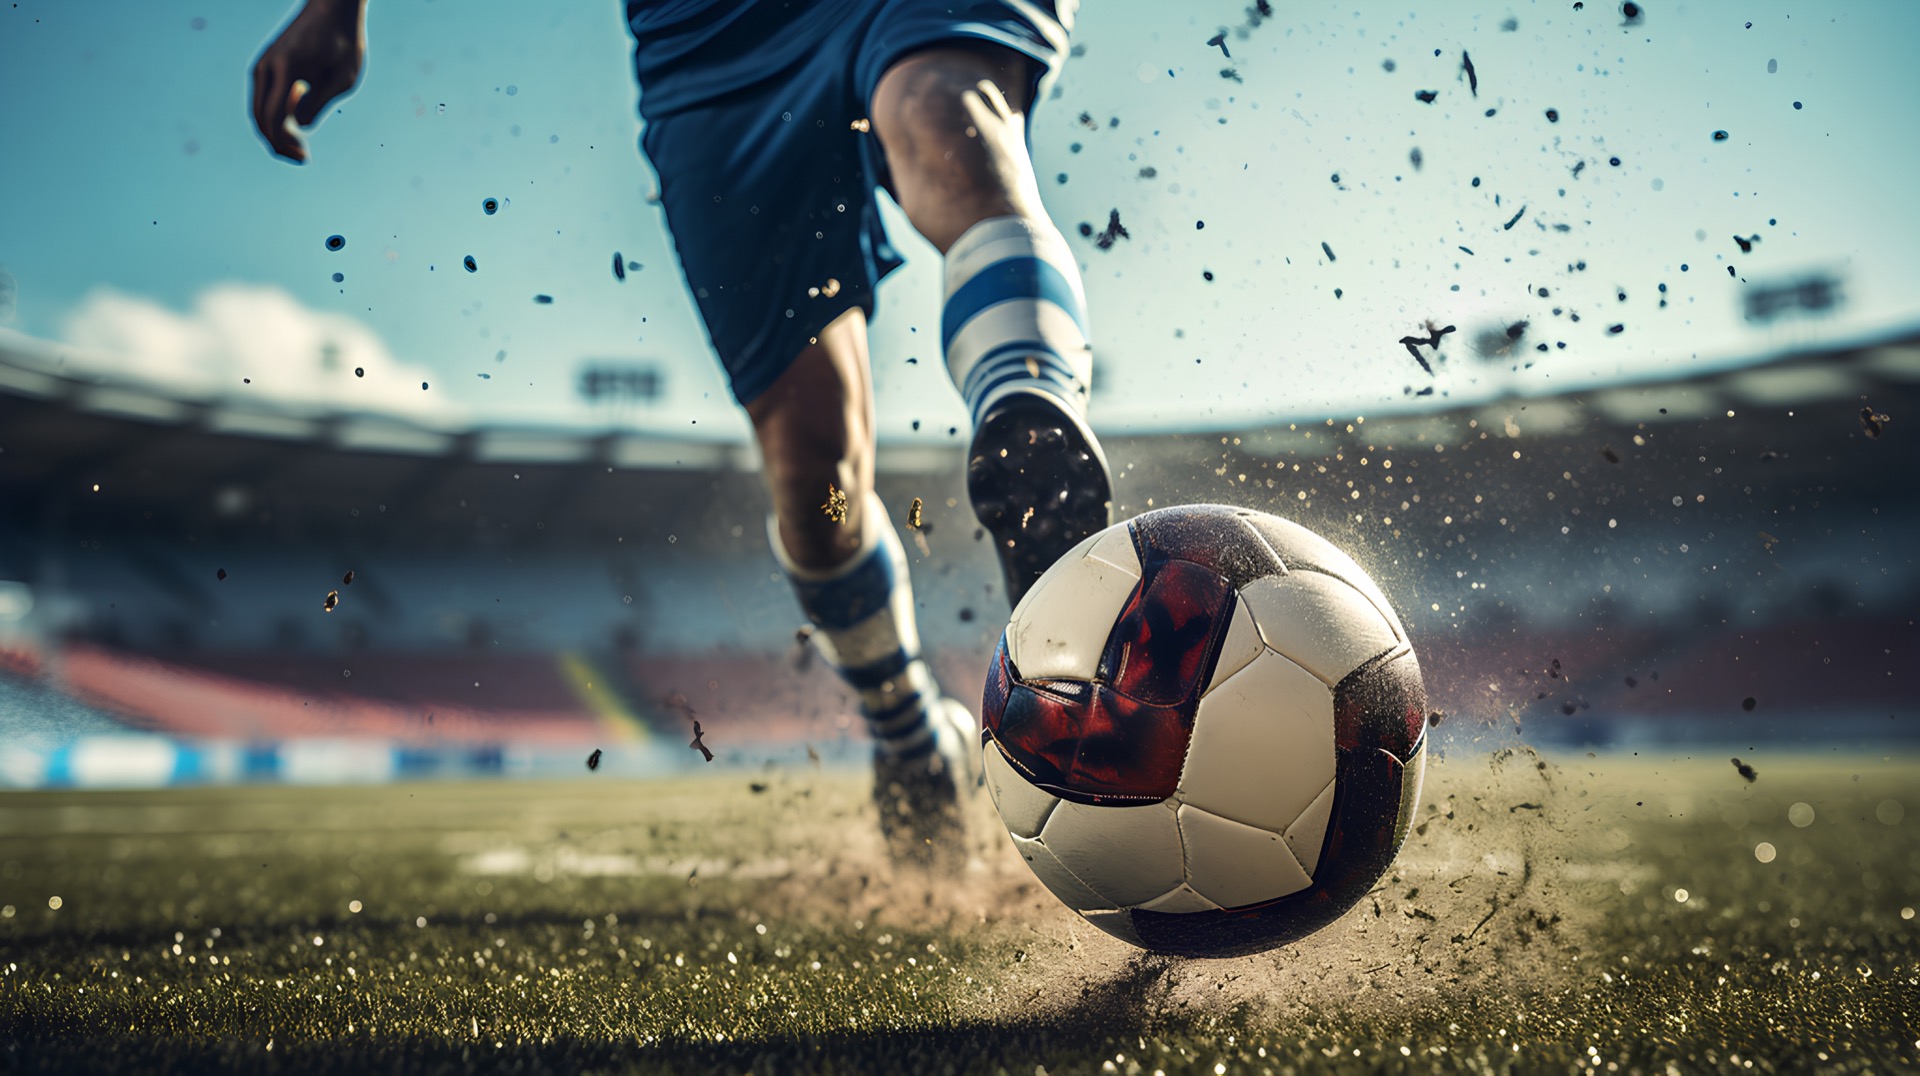 L'intelligence artificielle pourrait devenir une aide à la décision auprès des entraineurs lors des matches de football afin de choisir les meilleures tactiques sur le terrain. © Atthawut, Adobe Stock